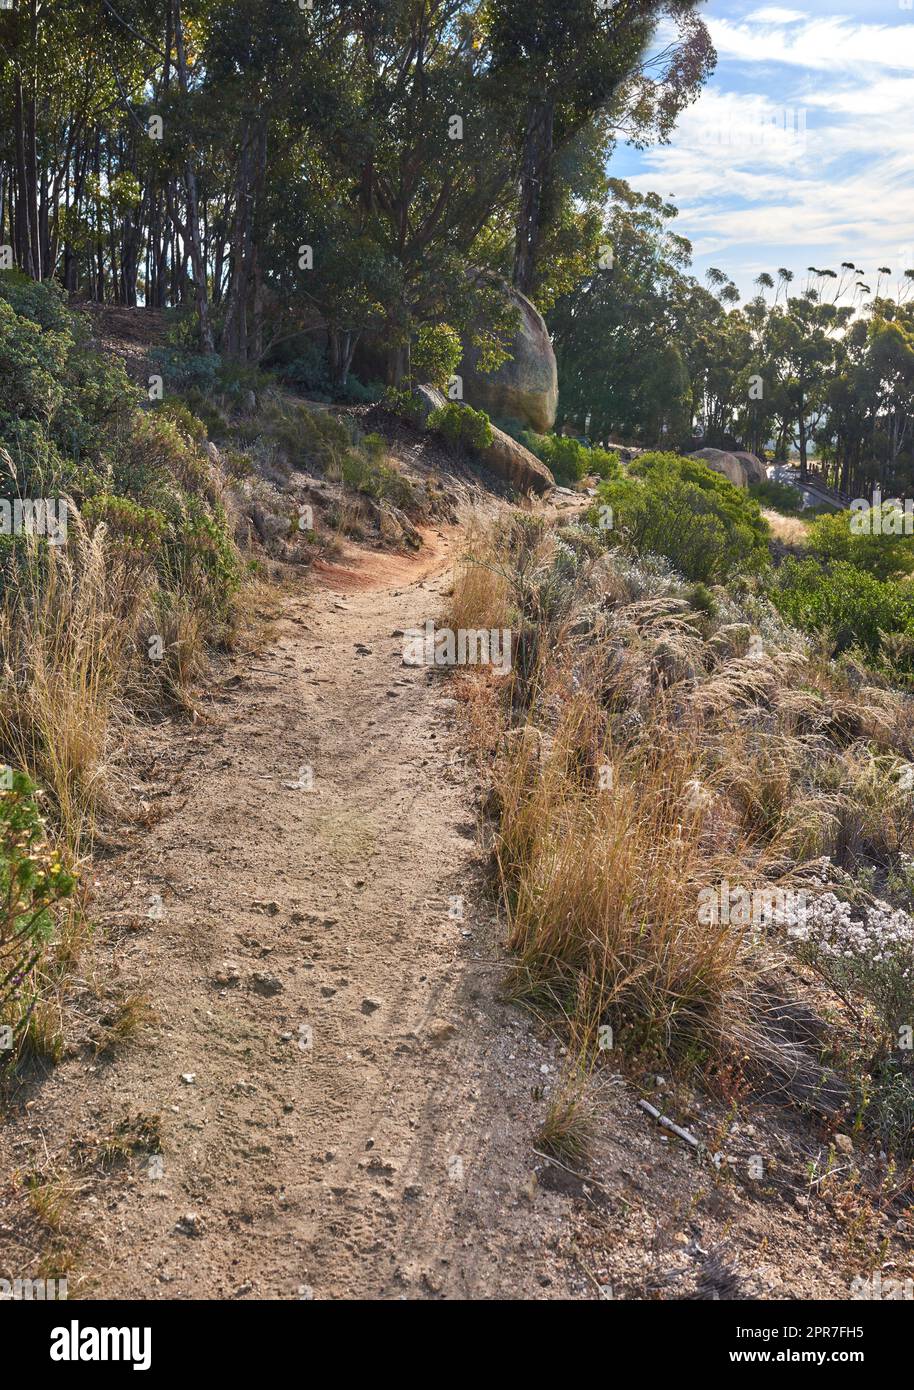 Paesaggio di un sentiero escursionistico vicino a boschi coltivati su Table Mountain a città del Capo. Foresta di alti alberi di eucalipto che crescono su una collina sabbiosa in Sud Africa affacciata sull'oceano e sul paesaggio urbano Foto Stock